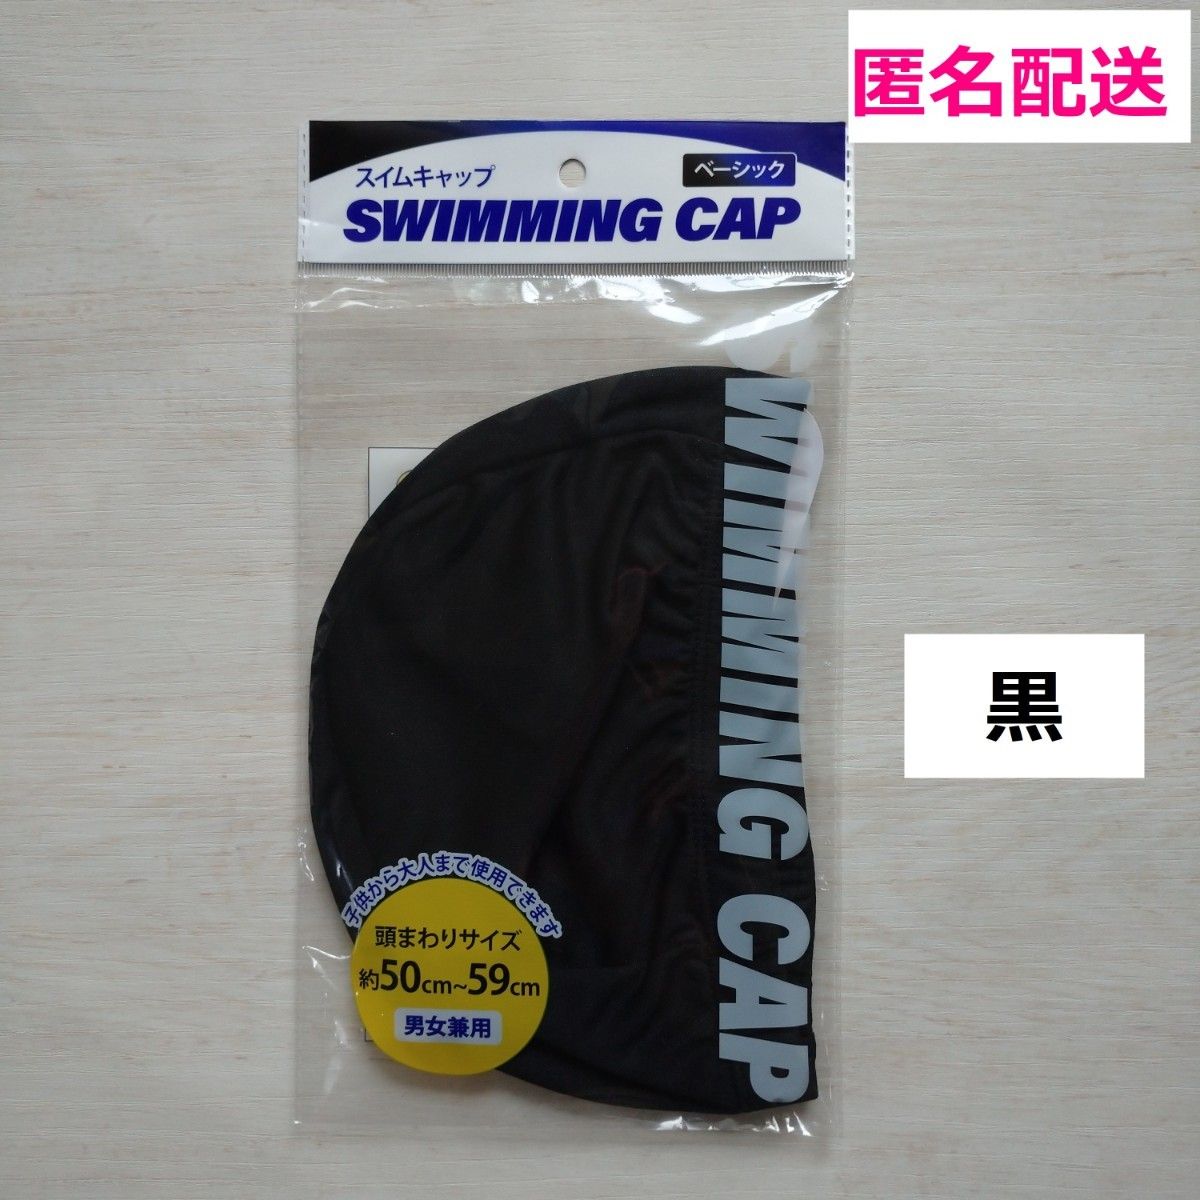 ★新品★スイムキャップ ブラック 黒 プール 帽子 キャップ スイミング  スイミングキャップ 水泳帽子 2個 子供